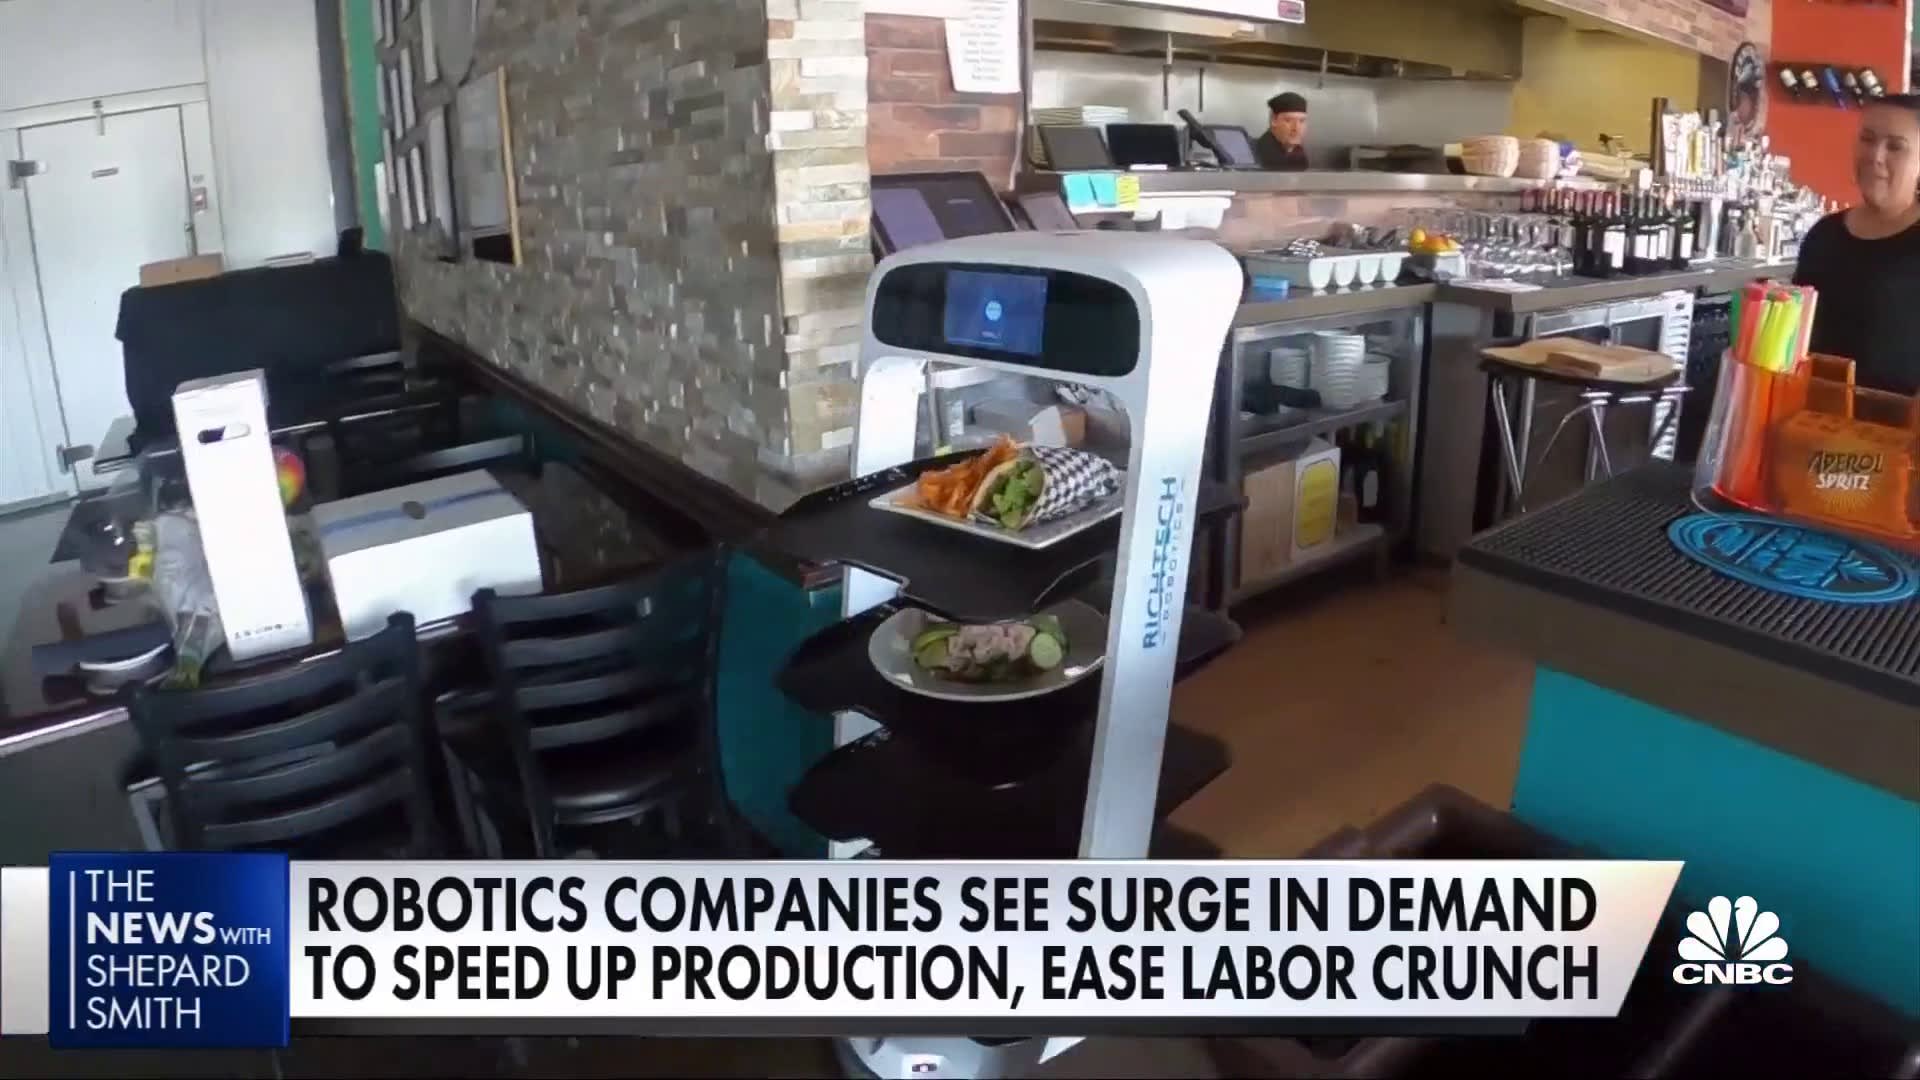 Thiếu lao động trầm trọng, nhiều nhà hàng phải dùng robot để phục vụ - 1